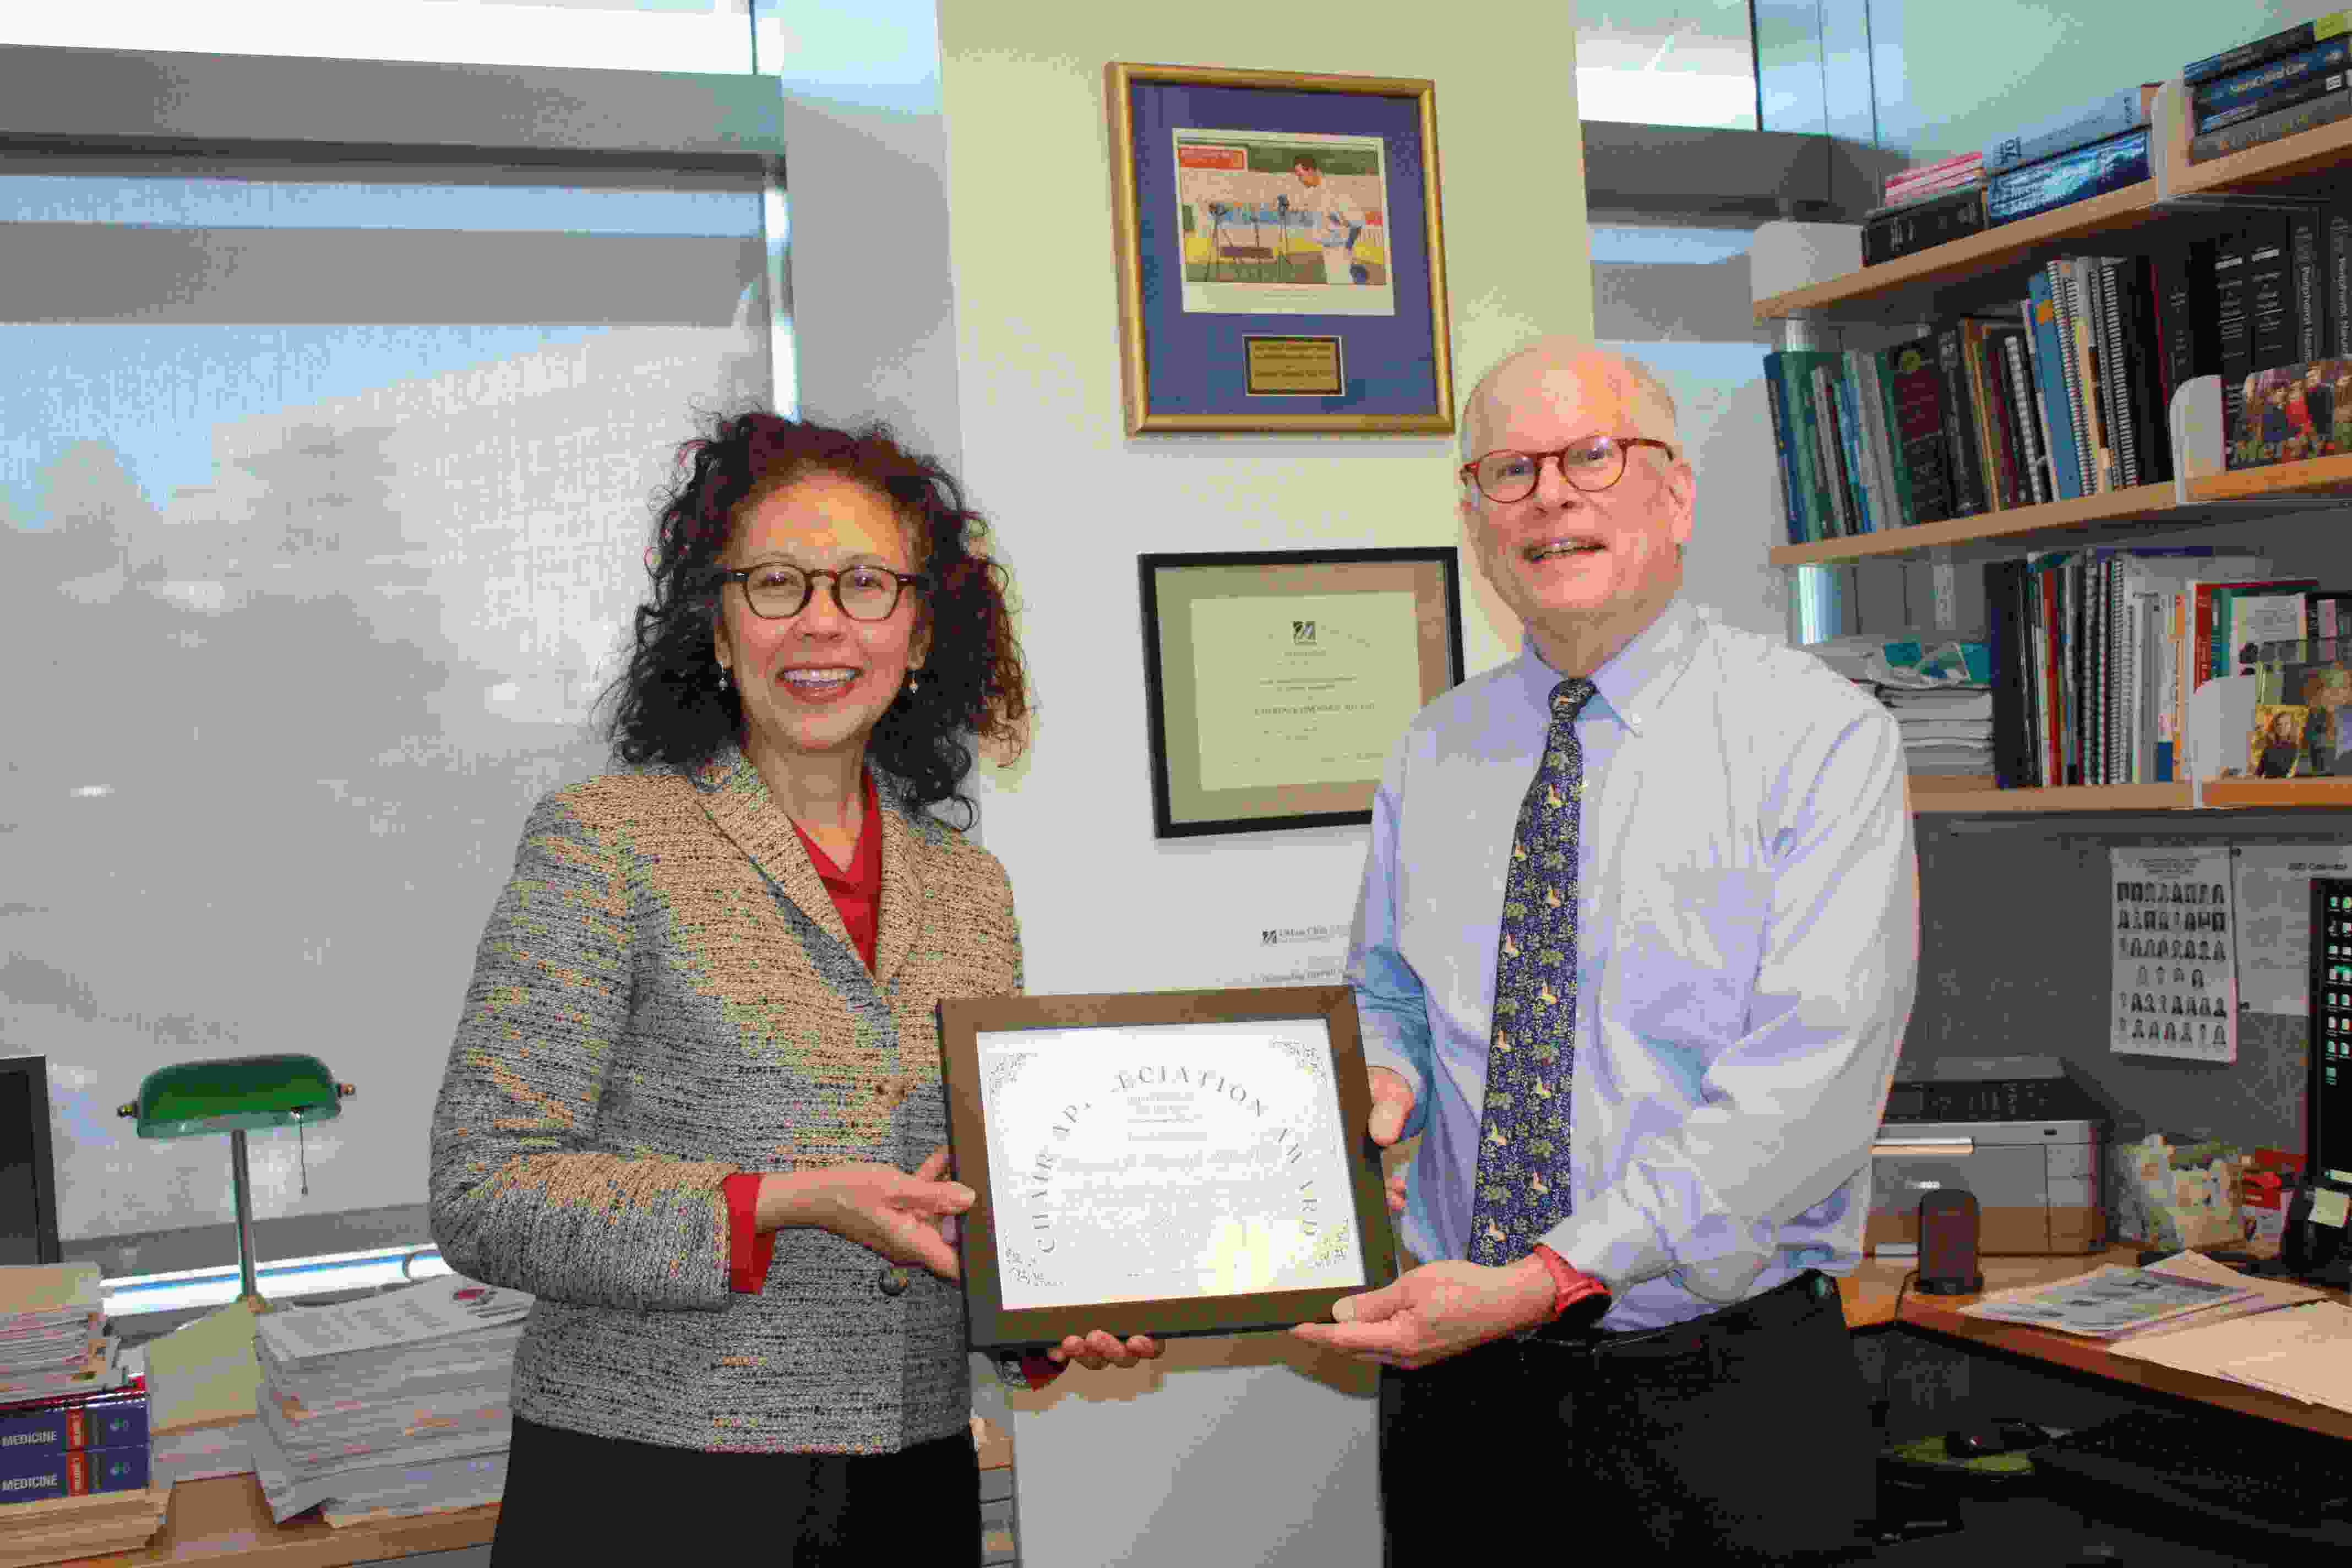 Chair Appreciation Award, Department of Neurology